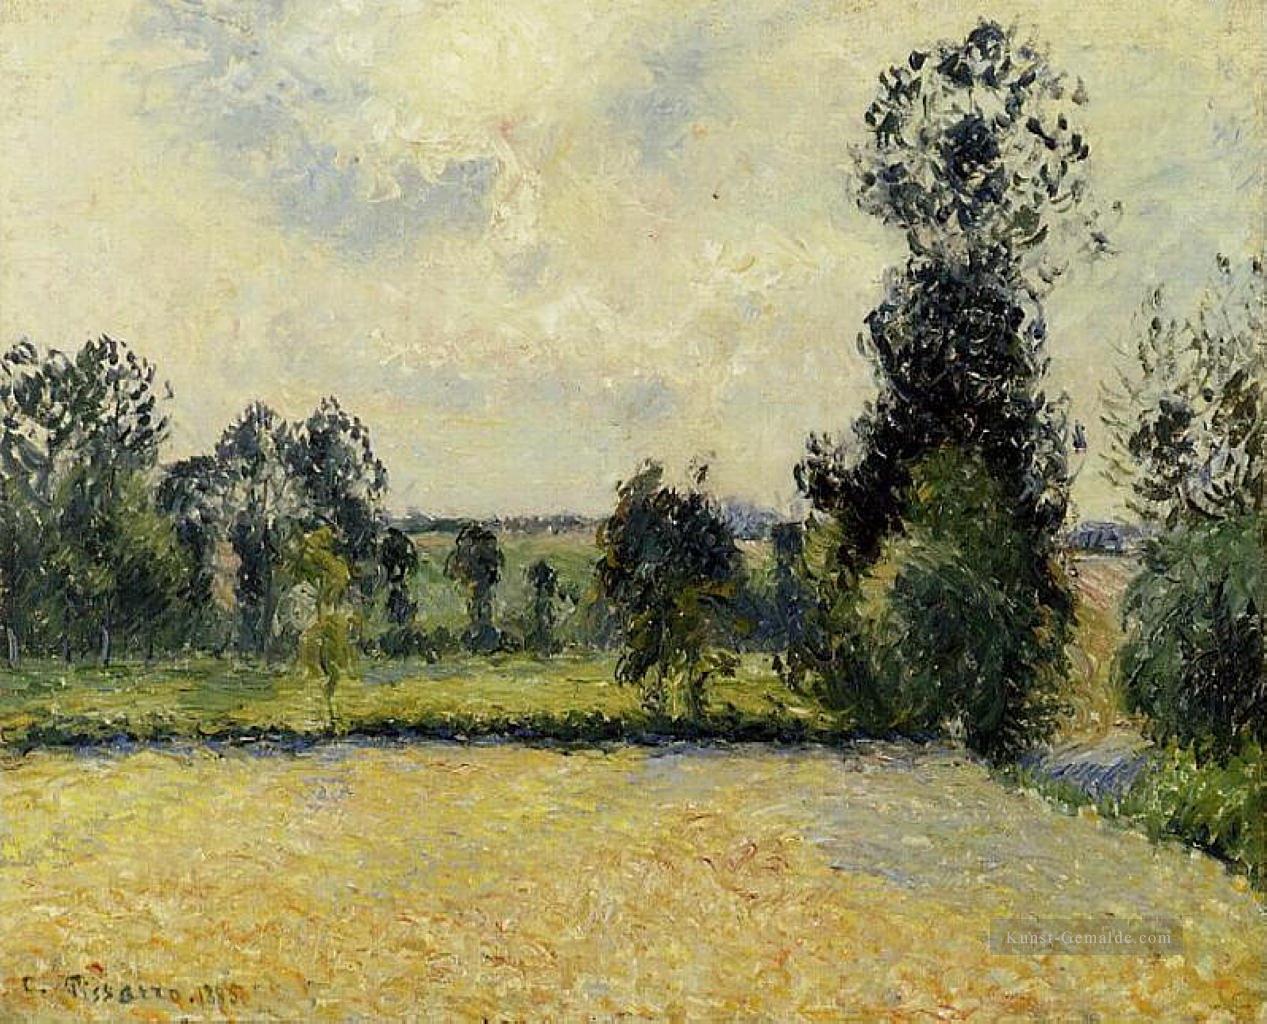 Feld von Hafer in eragny 1885 Camille Pissarro Ölgemälde